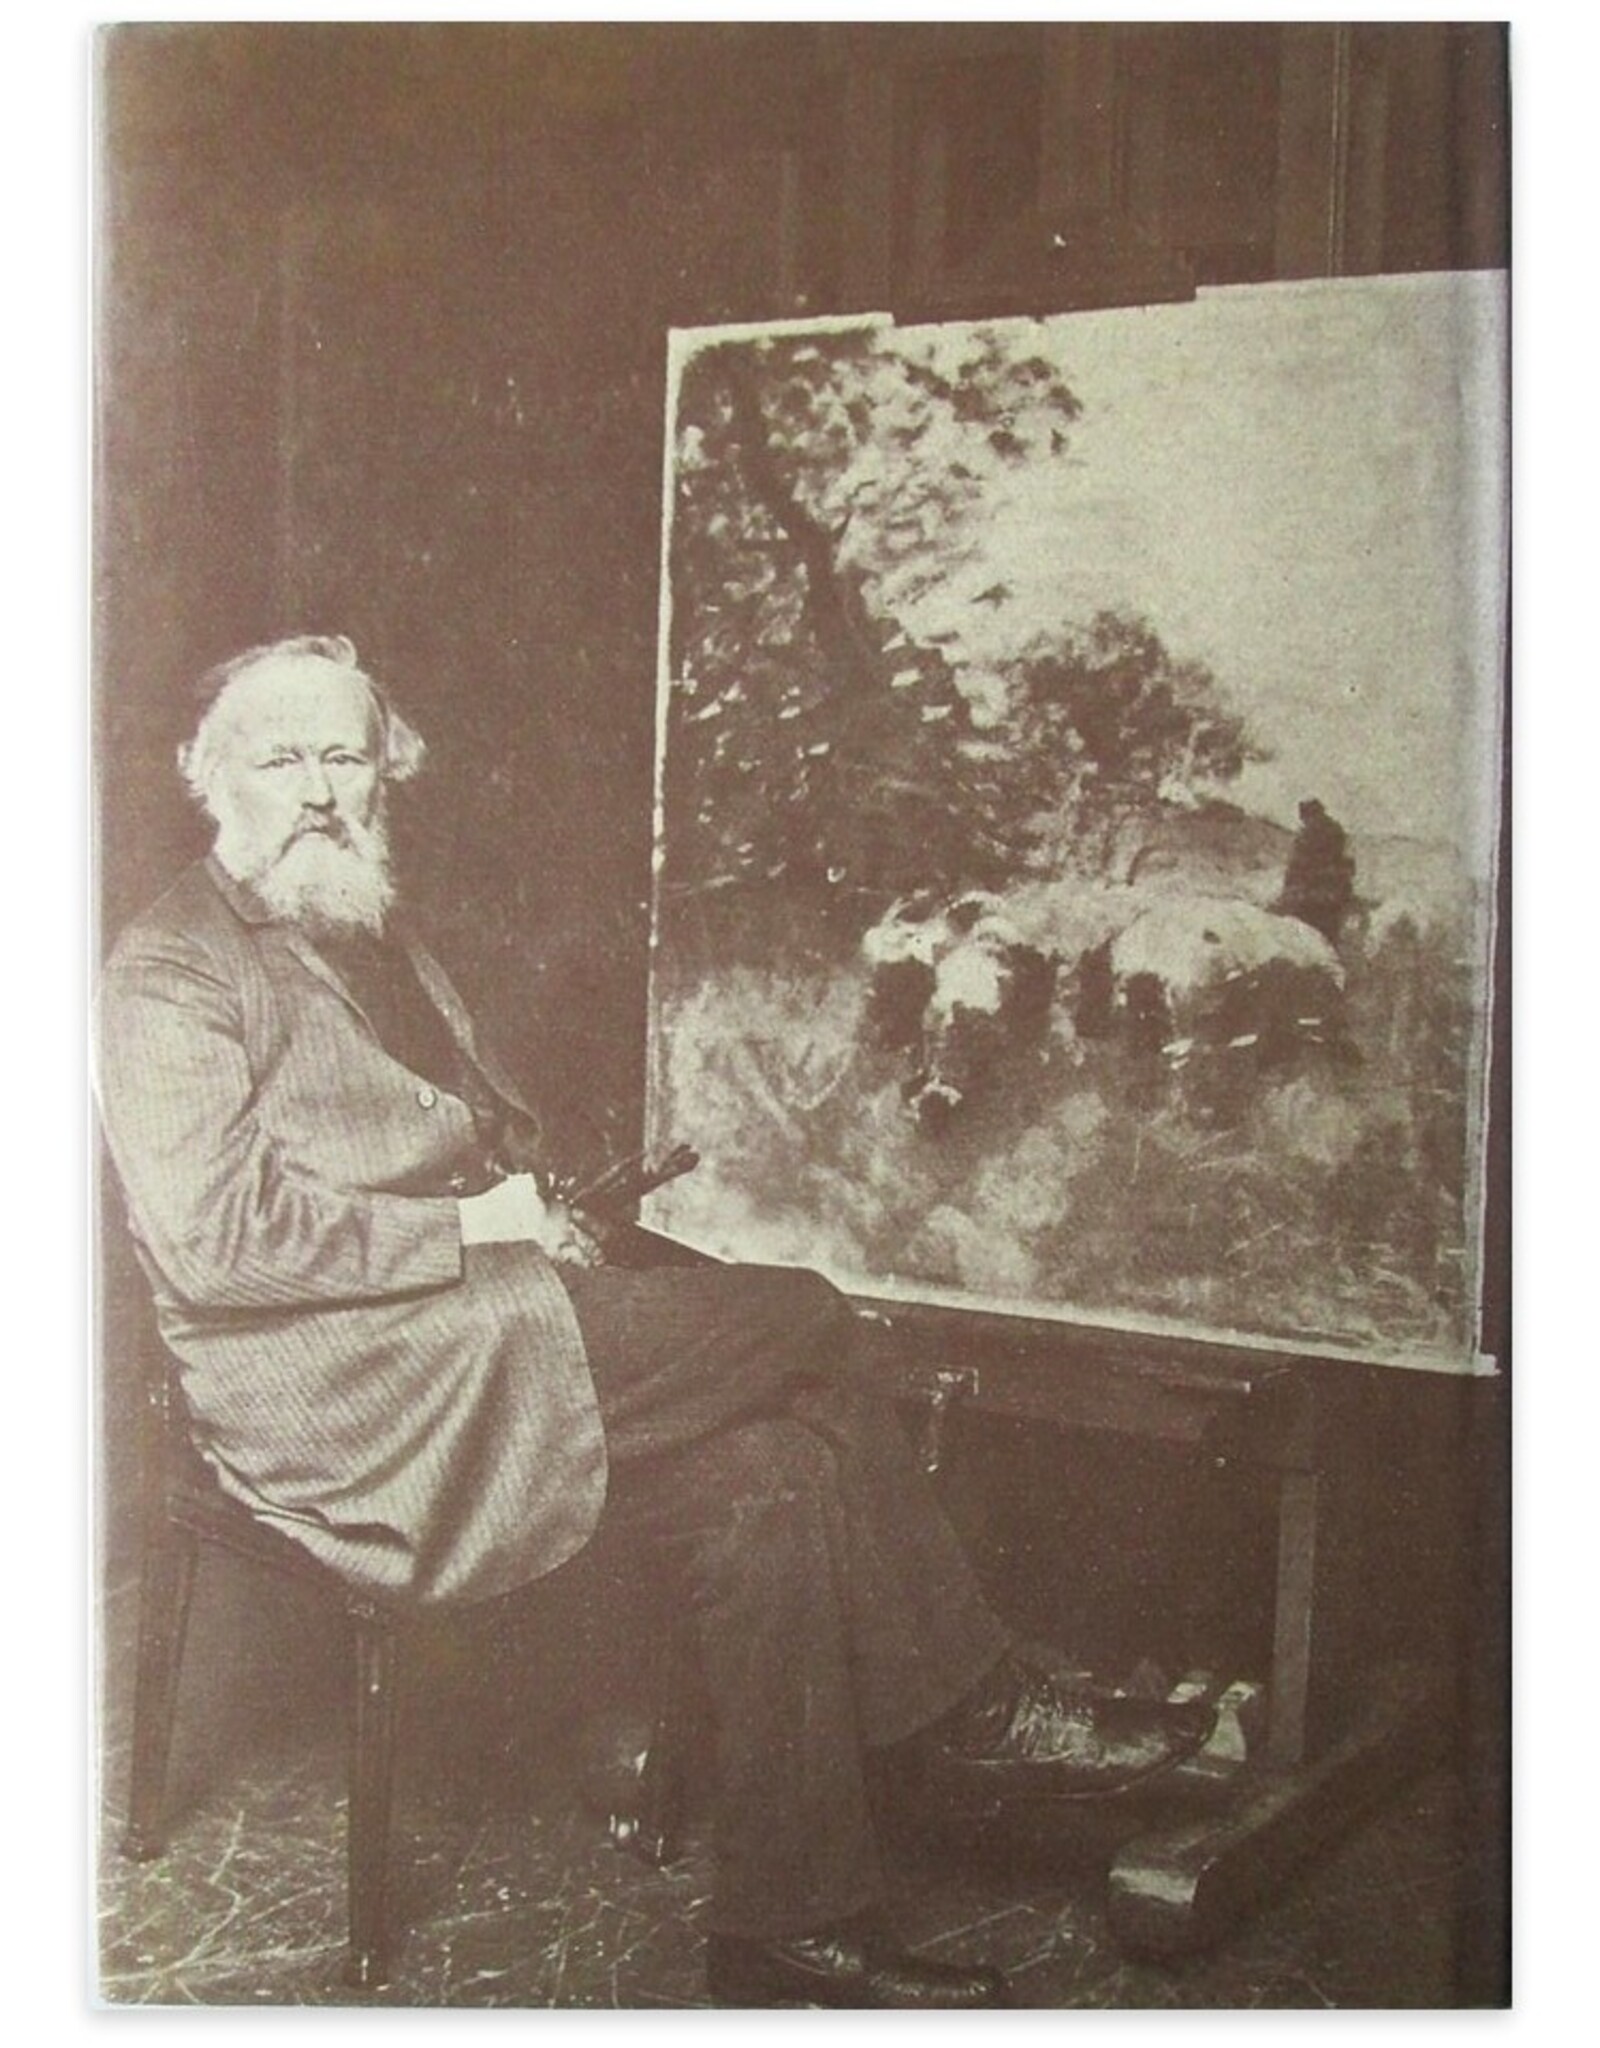 Gerrit van Dolderen - Van boeren, buitenlui en schilders. Oosterbeek, Wolfheze, Doorwerth en hun kunstenaarskolonie in de 19e eeuw